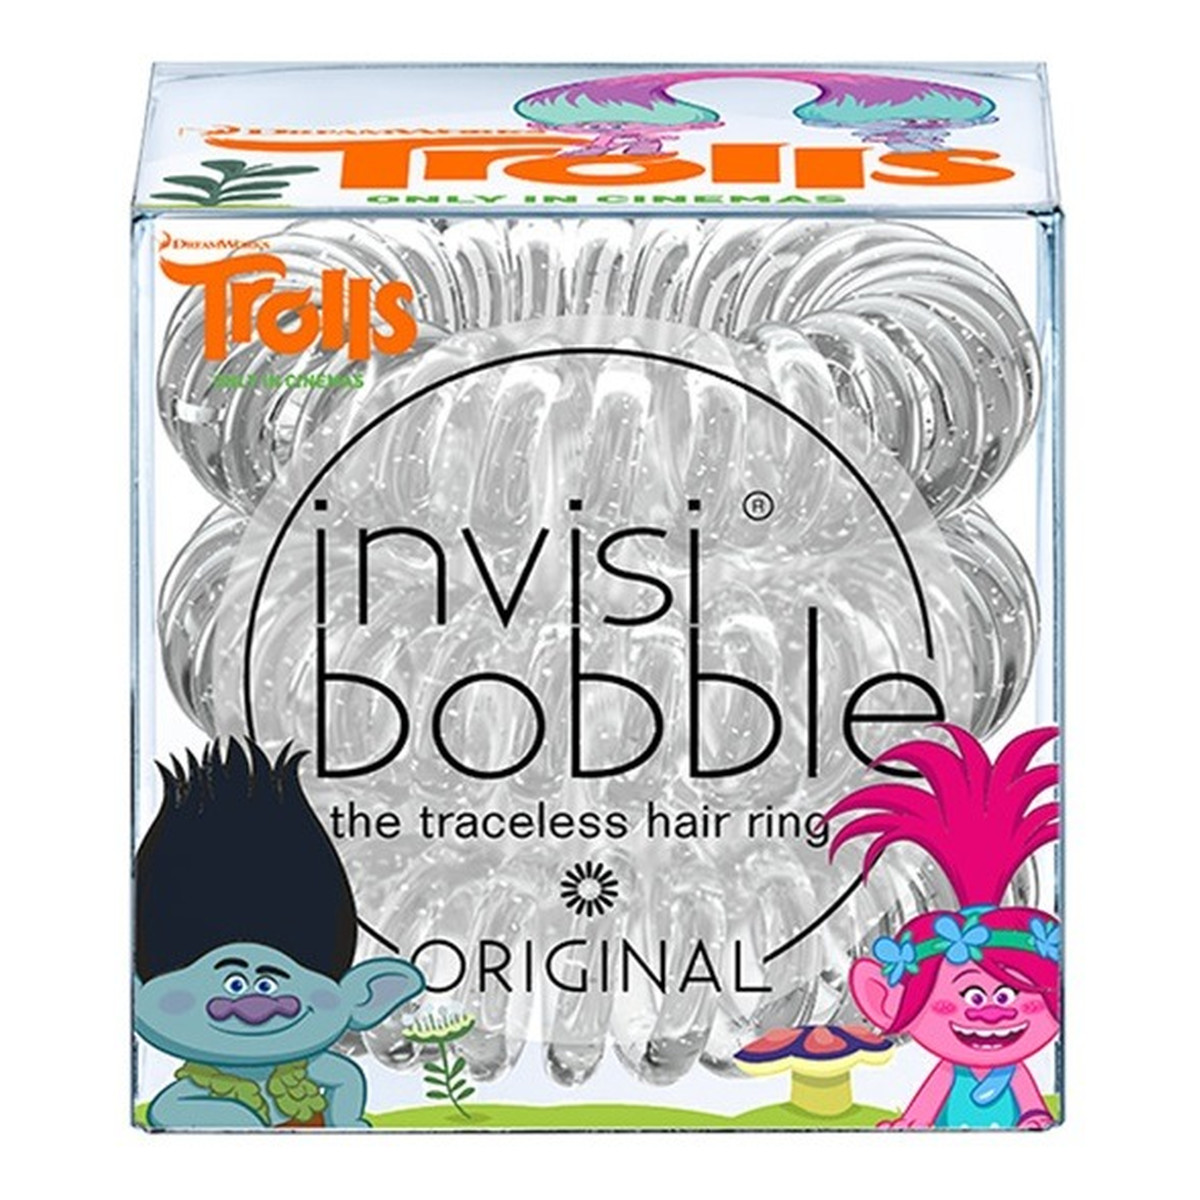 Invisibobble Original Trolls 3 gumki do włosów przezroczyste